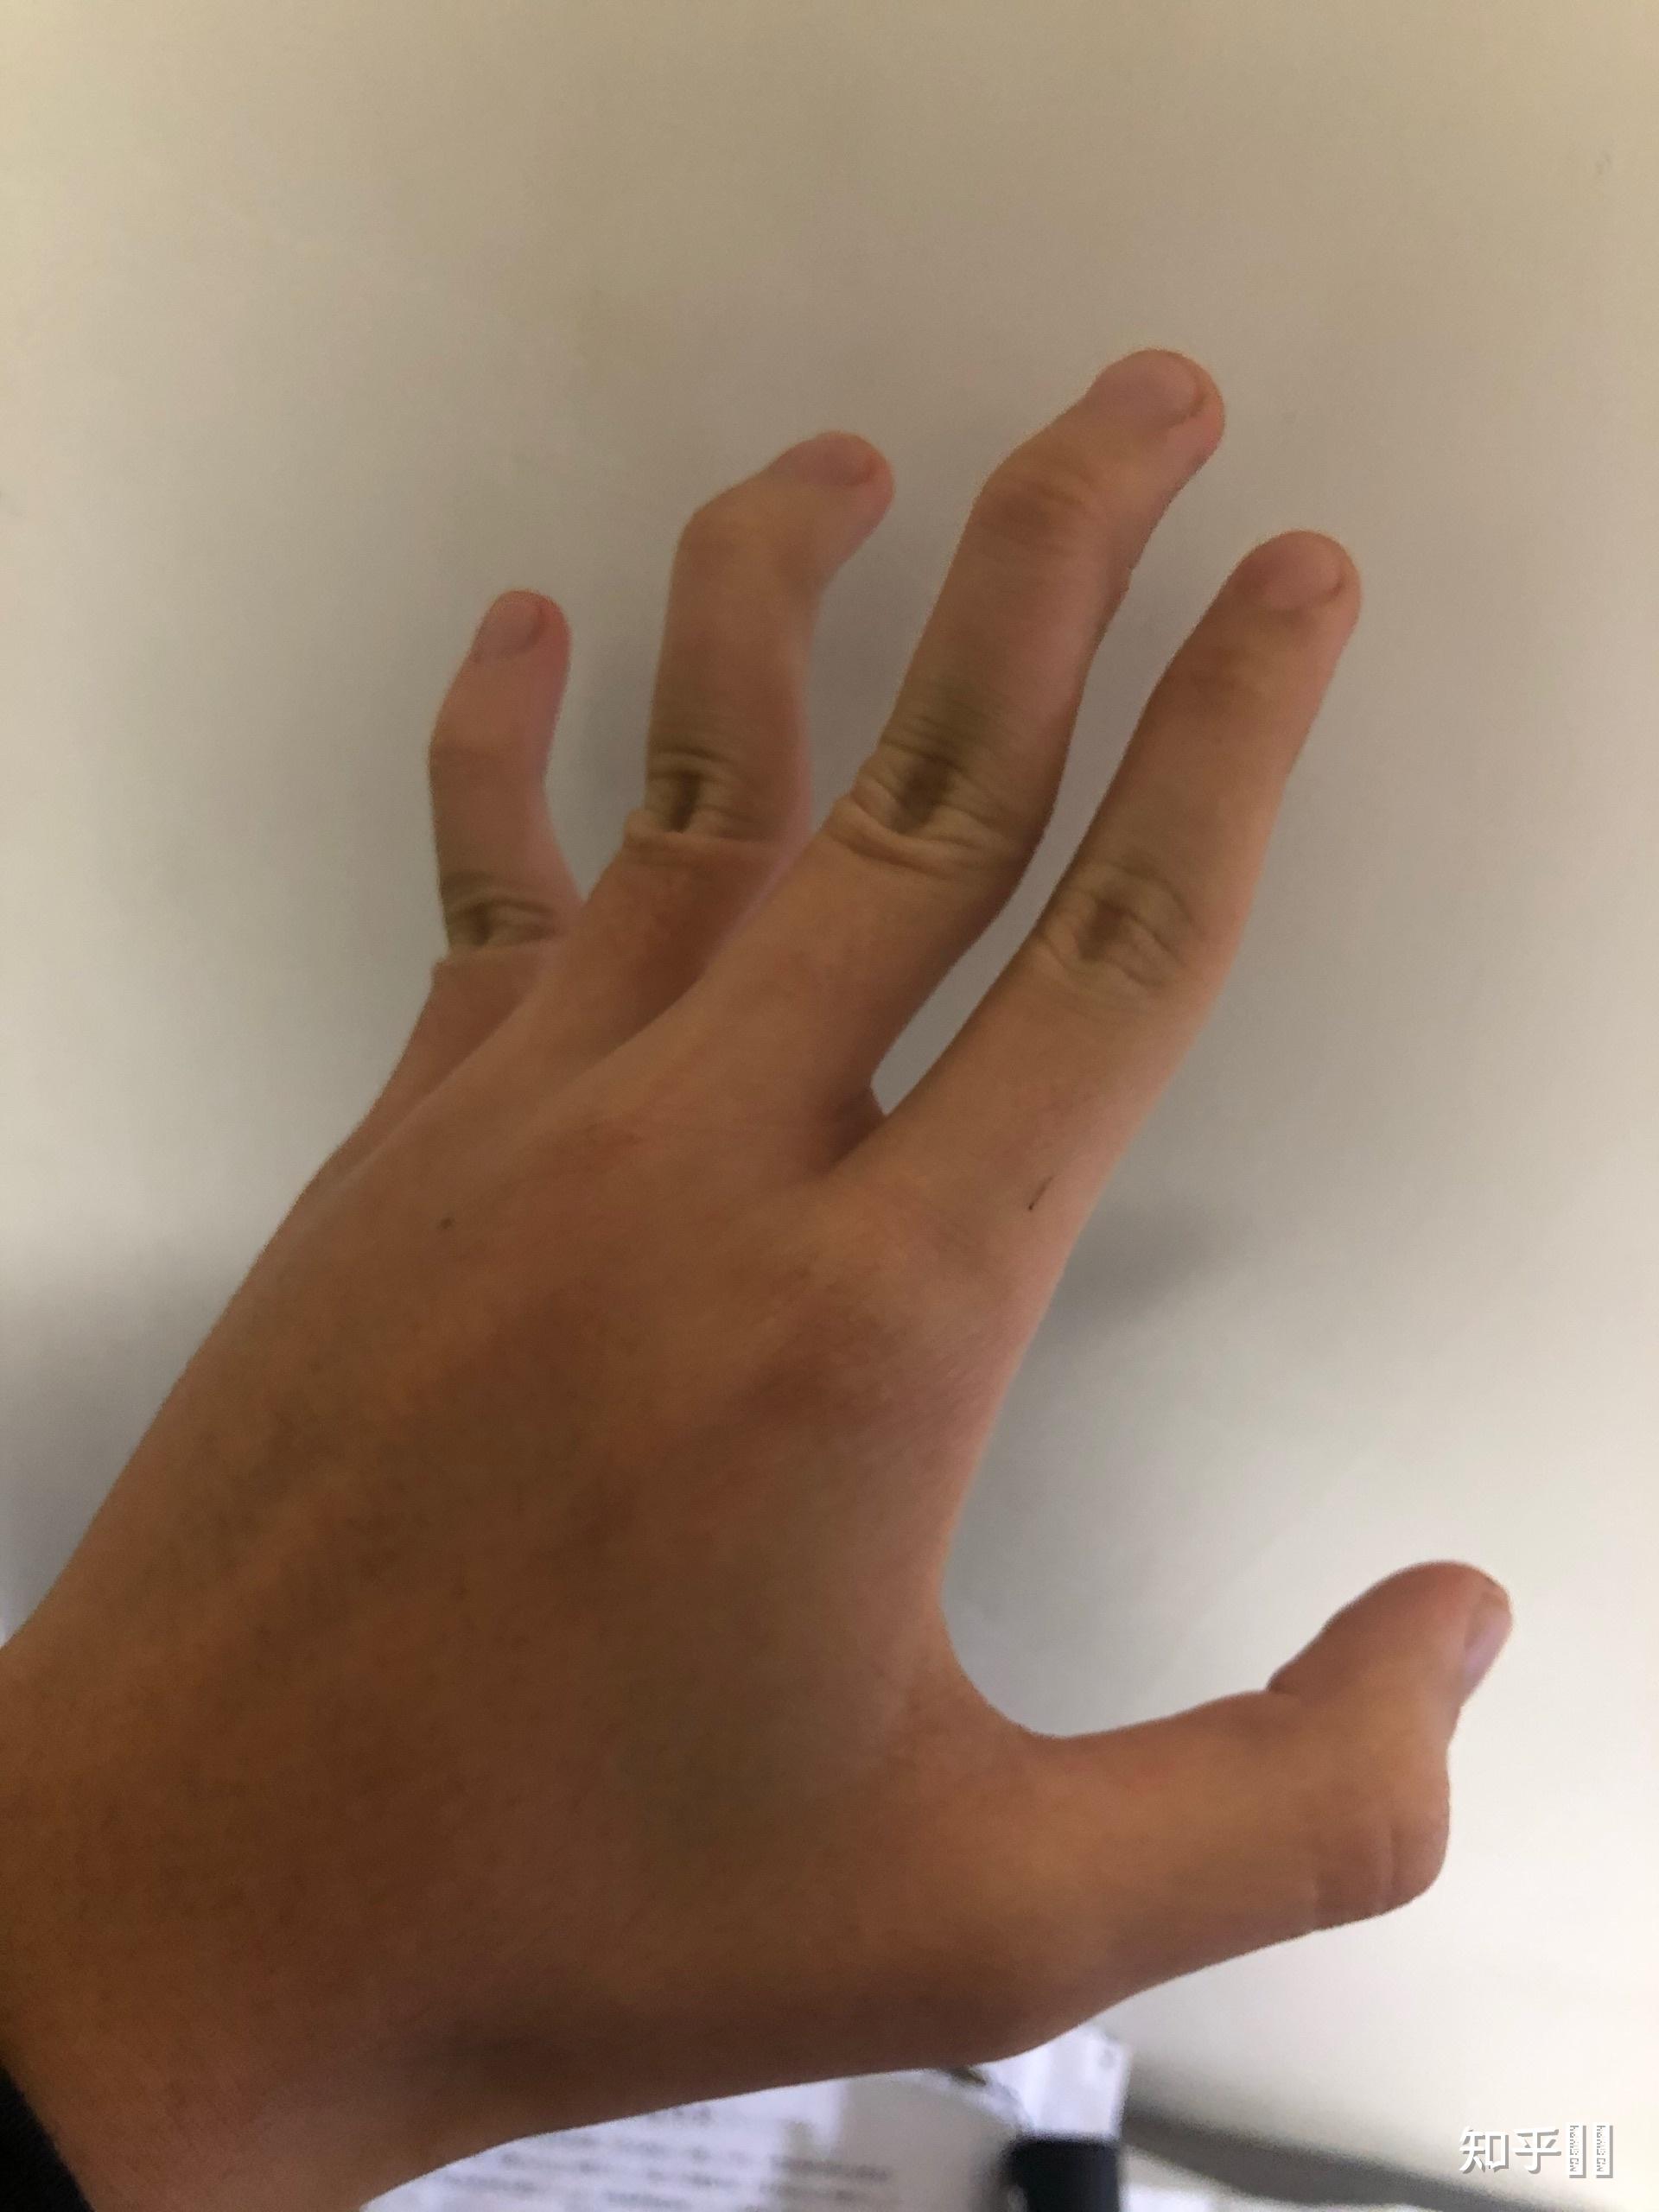 手指十个指头第一关节可反向弯曲90度正常吗? 